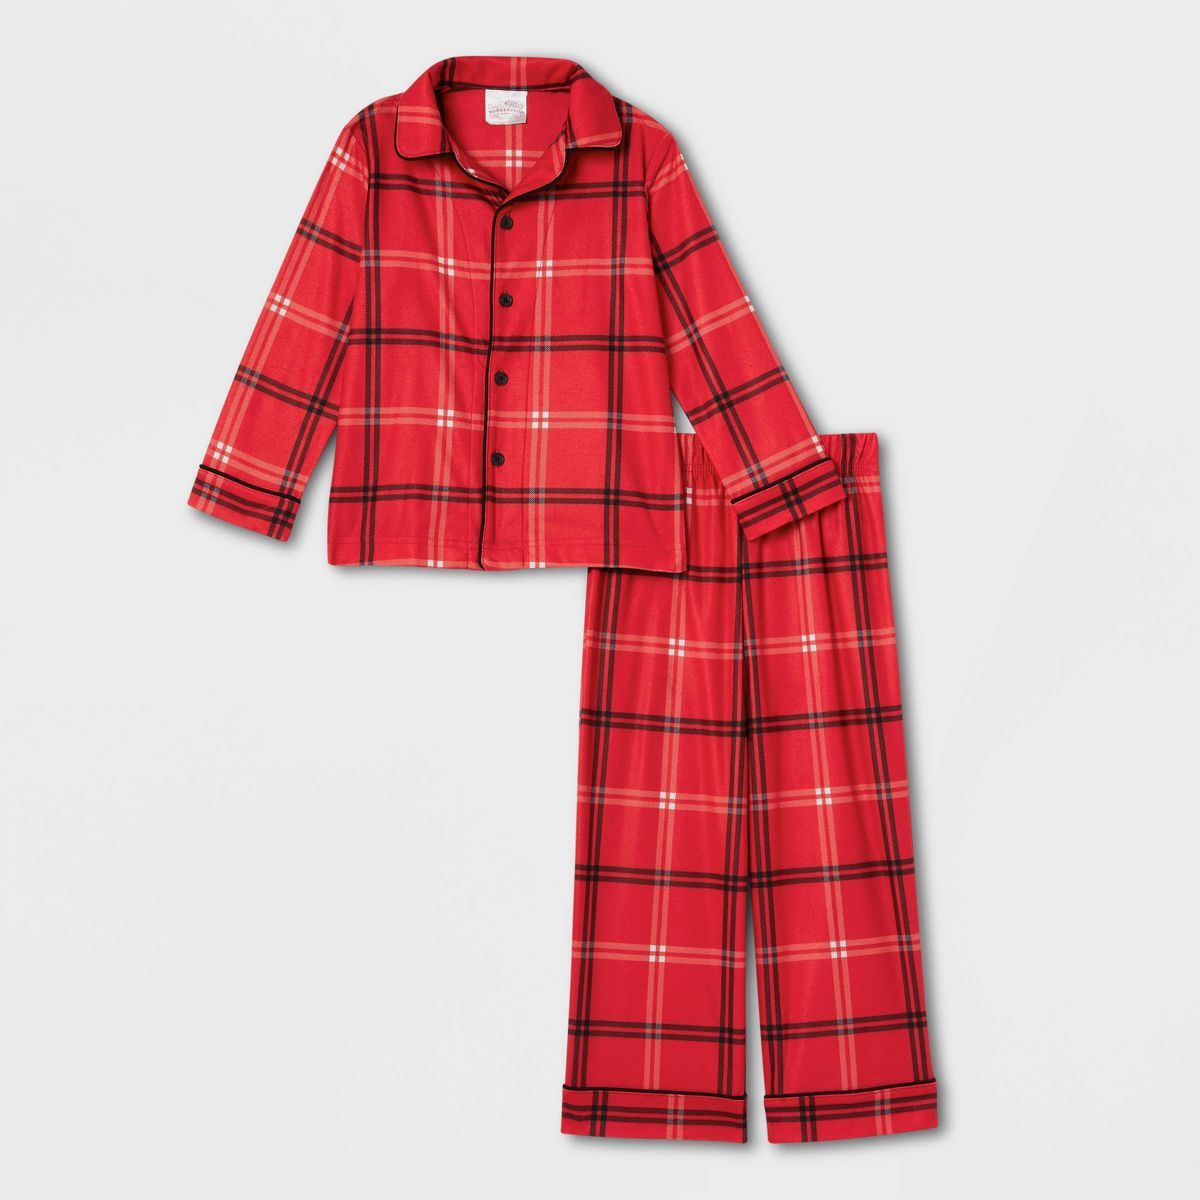 Toddler Plaid Matching Family Pajama Set - Wondershop™ Red | Target